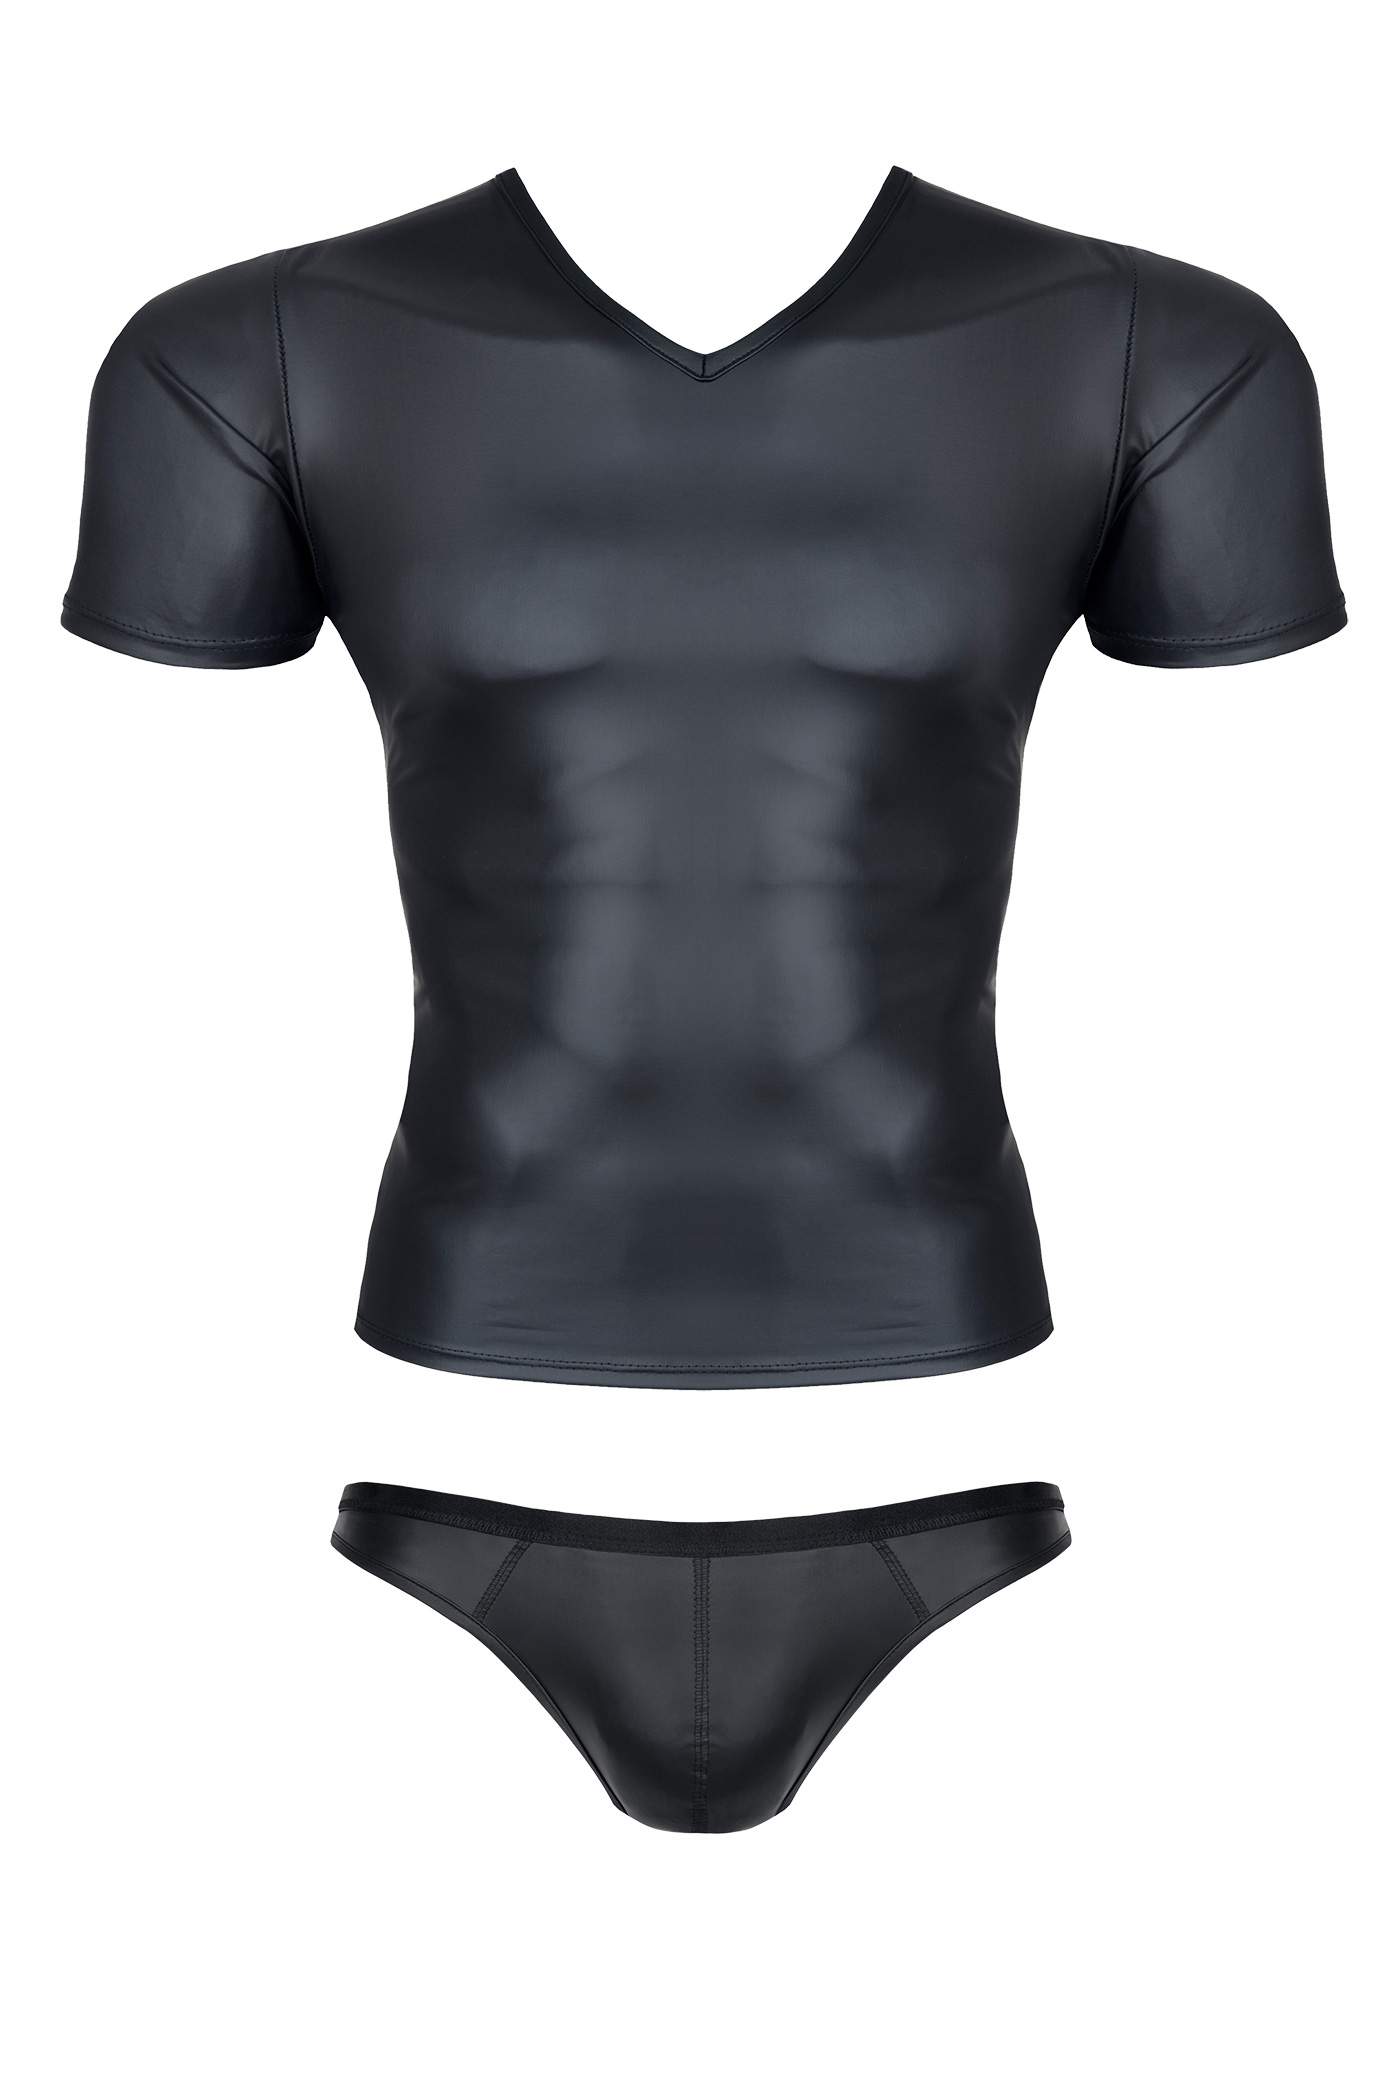 Przylegająca do ciała czarna koszulka z wetlook i figi brazyliany dla mężczyzn